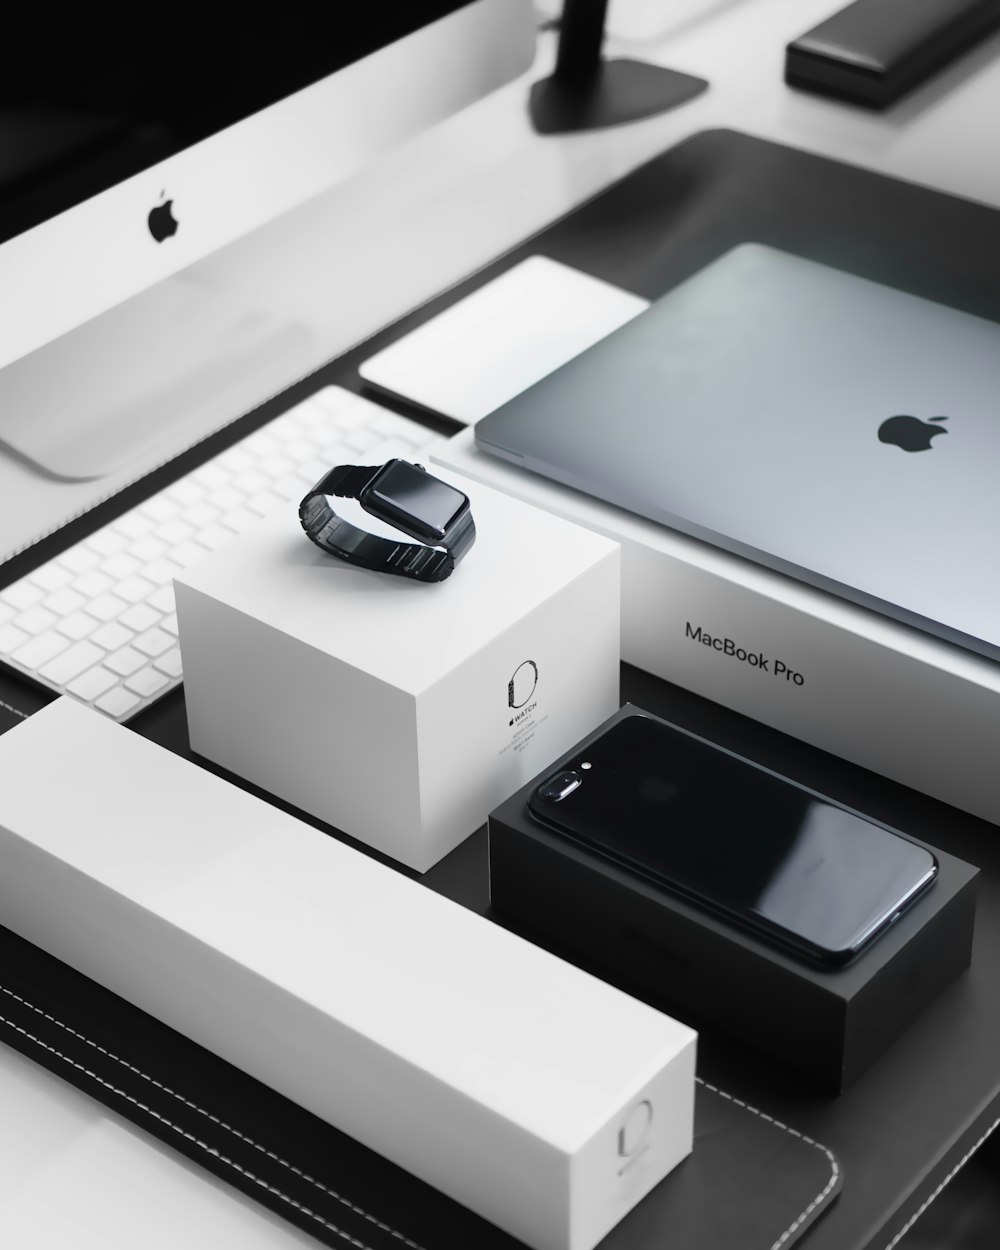 Custodia nera siderale per Apple Watch, MacBook Pro argento, iPhone 7 Plus nero corvino e iMac argento con le relative scatole